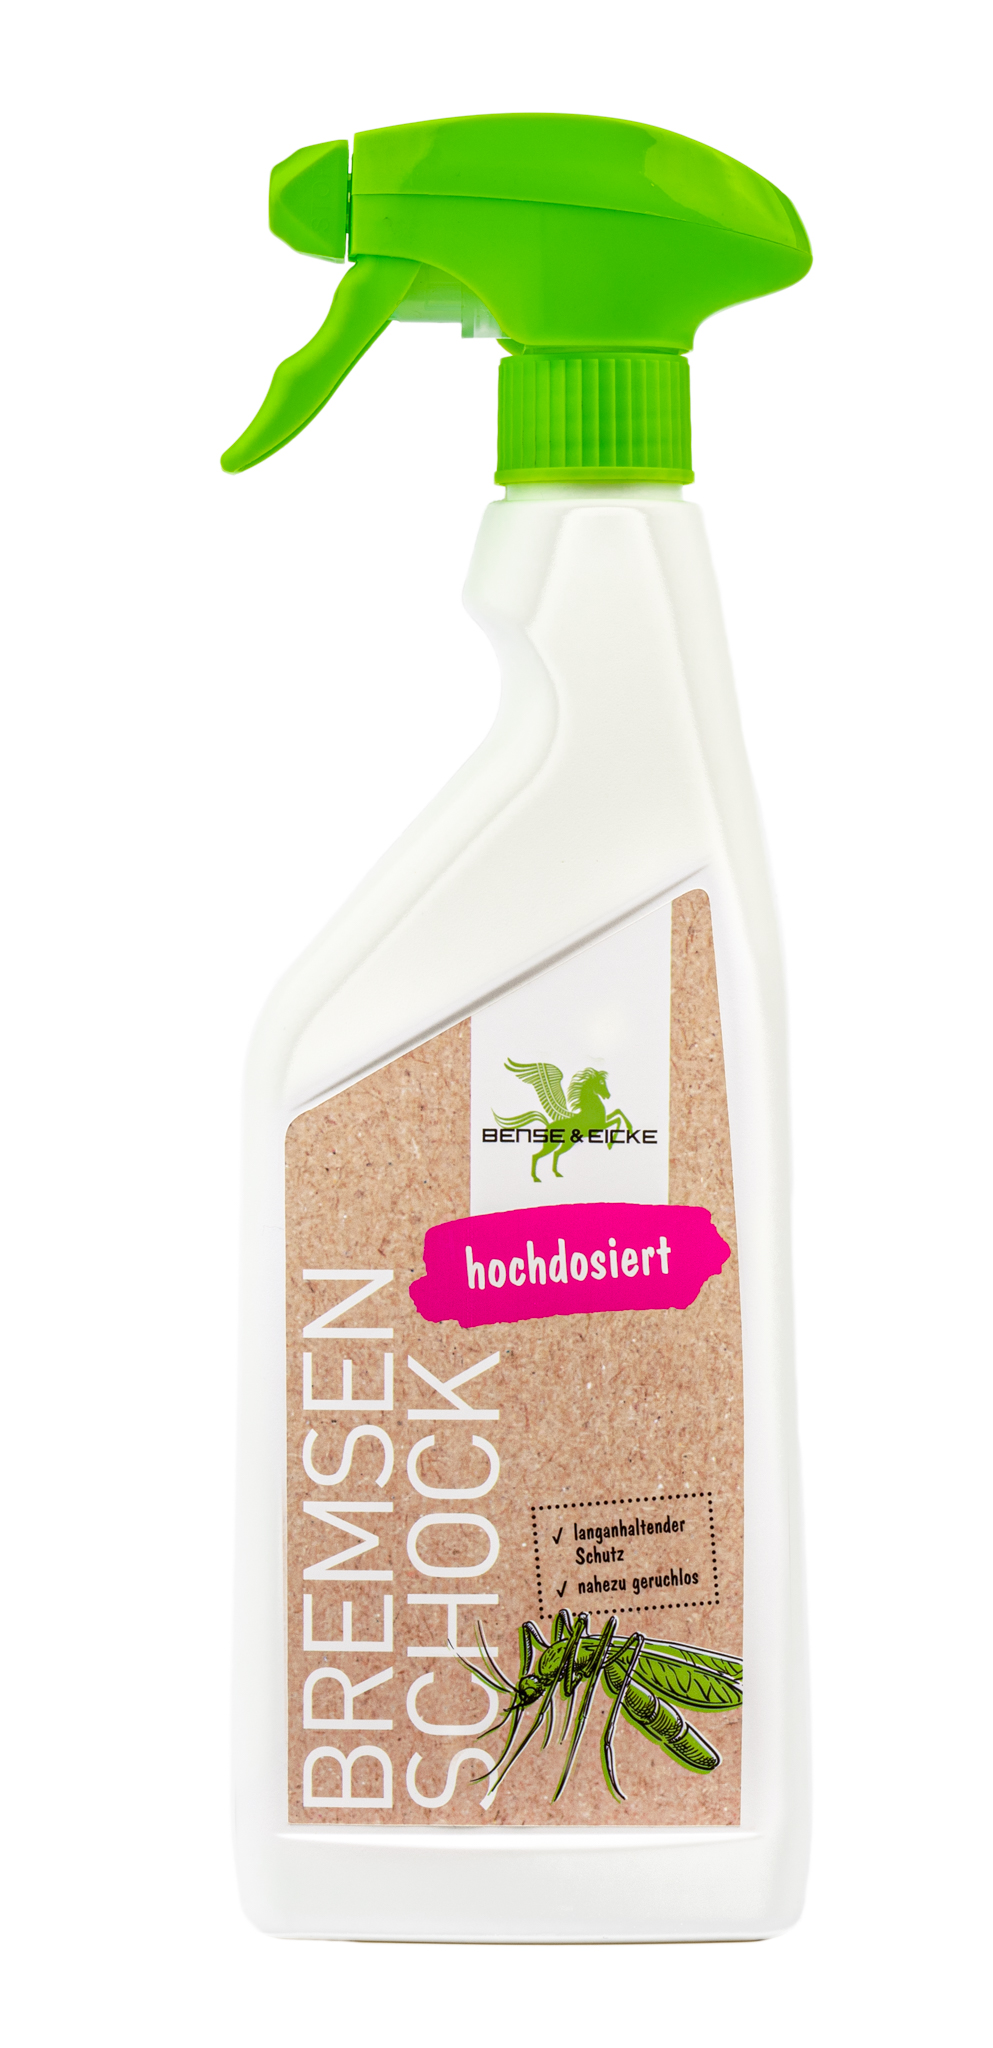 Bense & Eicke | BremsenSchock - Nahezu geruchloser Insektenschutz mit 20,6% Icaridin - 500 ml